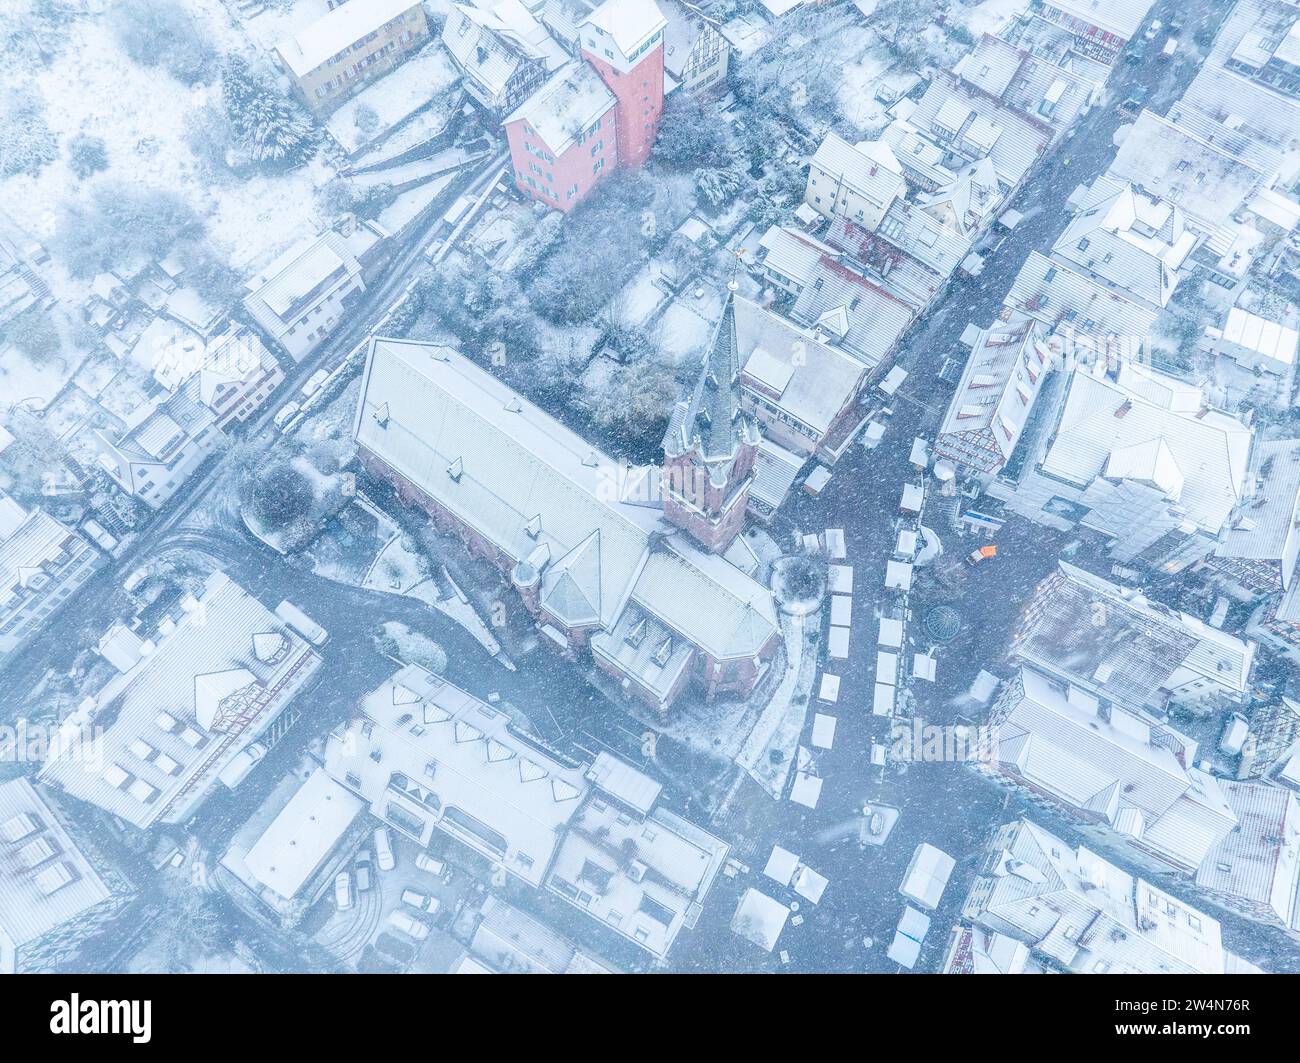 Imagen de dron de una ciudad cubierta de nieve con calles y techos visibles, Selva Negra, Calw, Alemania Foto de stock